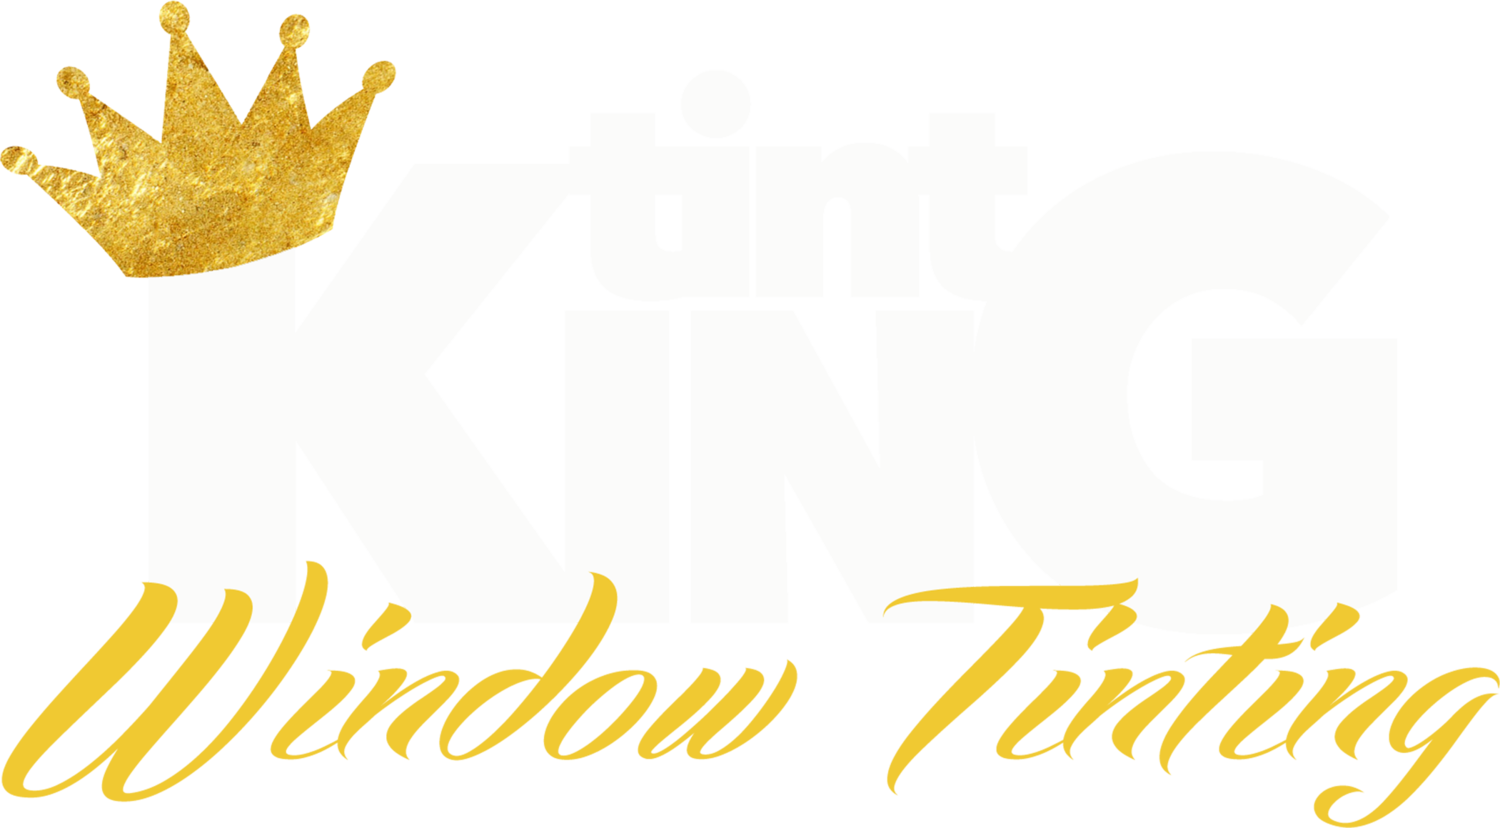 TK2-logo01